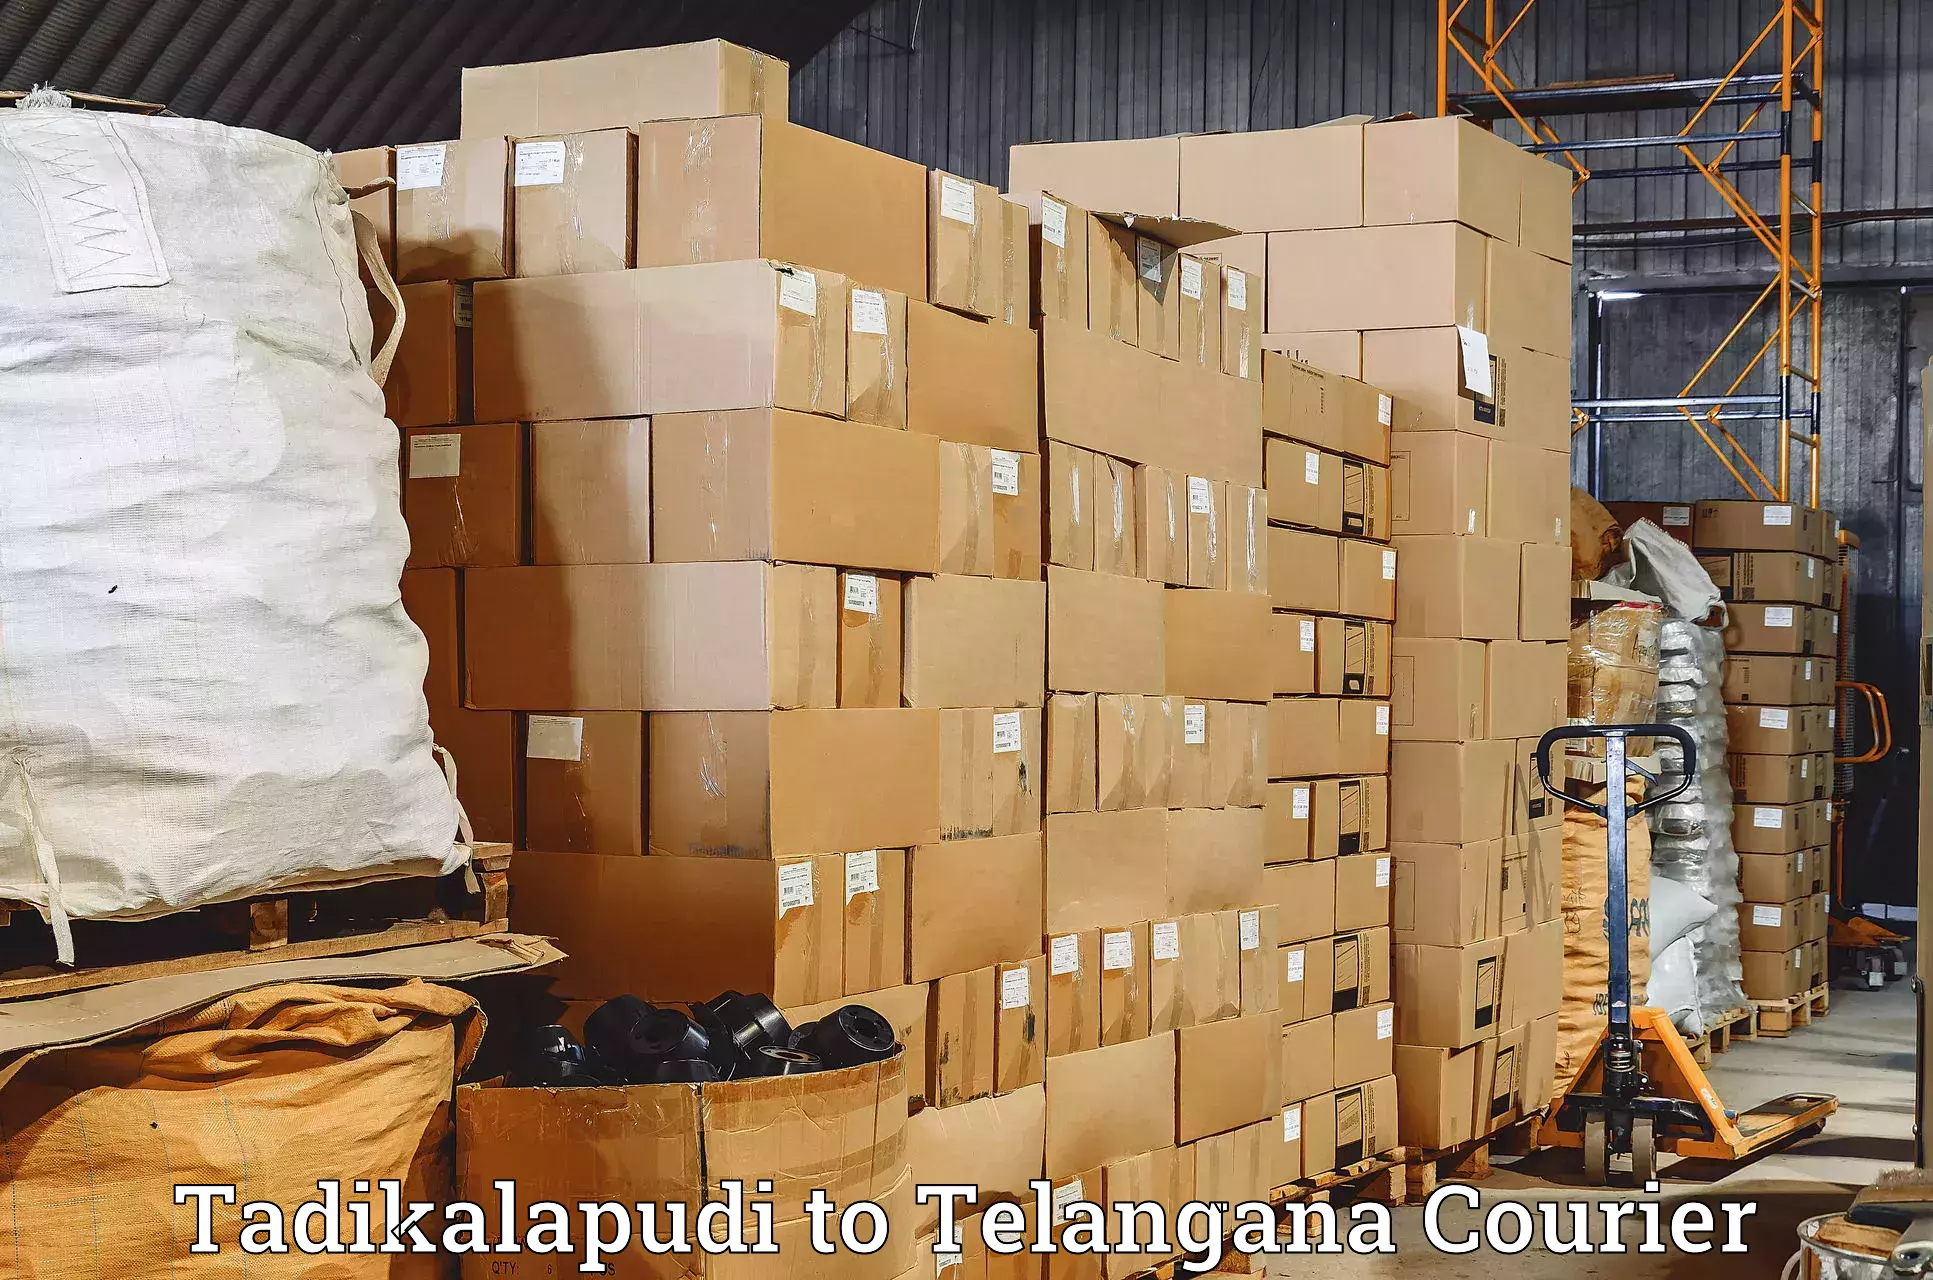 Same-day delivery options in Tadikalapudi to Mudigonda